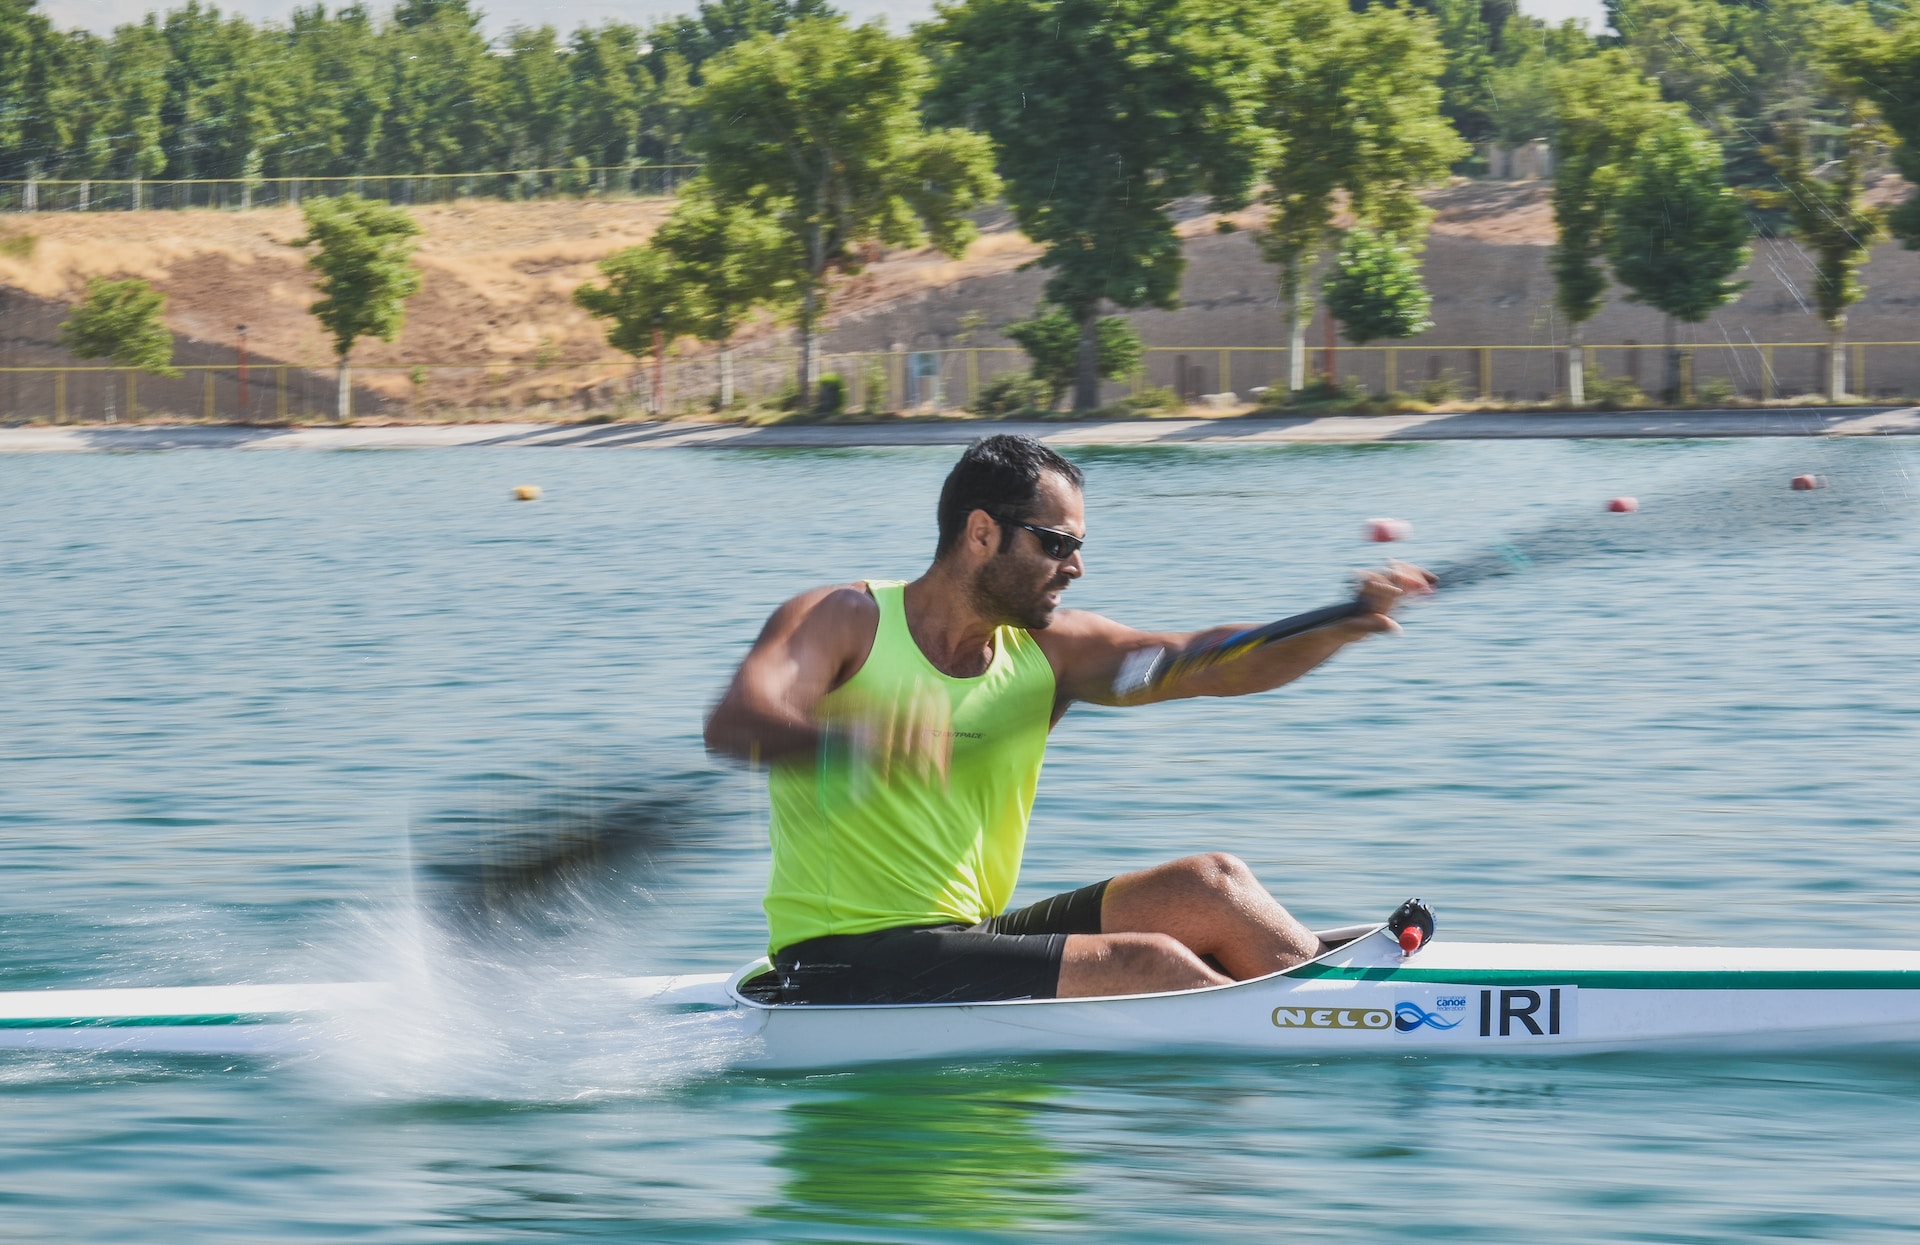 A racing kayak can quickly kayak a mile